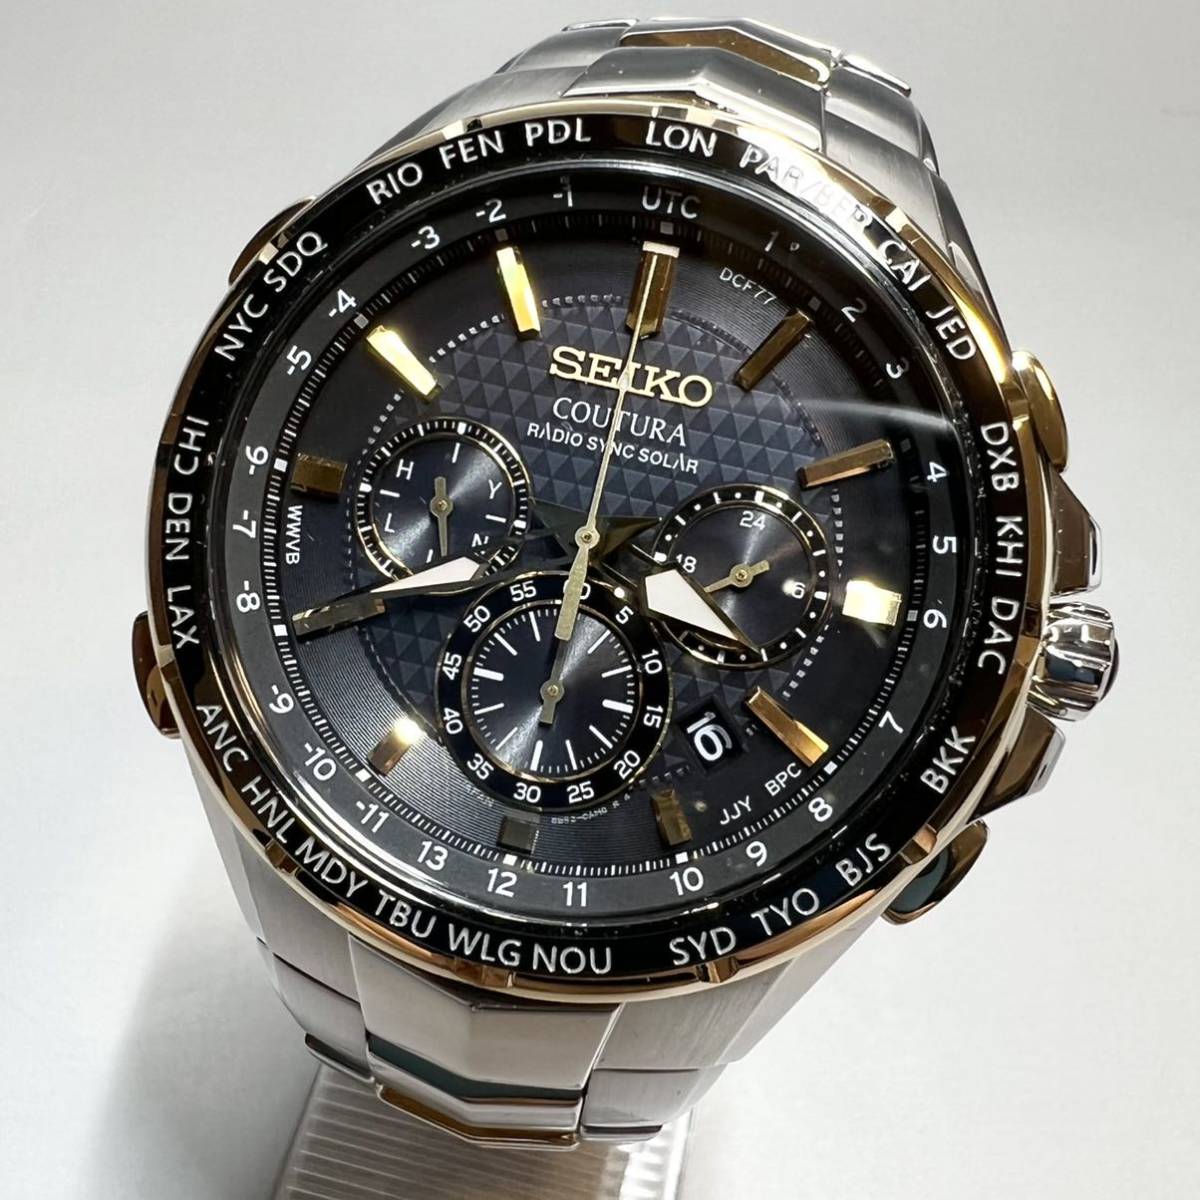 【定価8万円】SEIKO/セイコー 上級コーチュラ SSG010 ワールドタイム 電波ソーラー メンズ腕時計